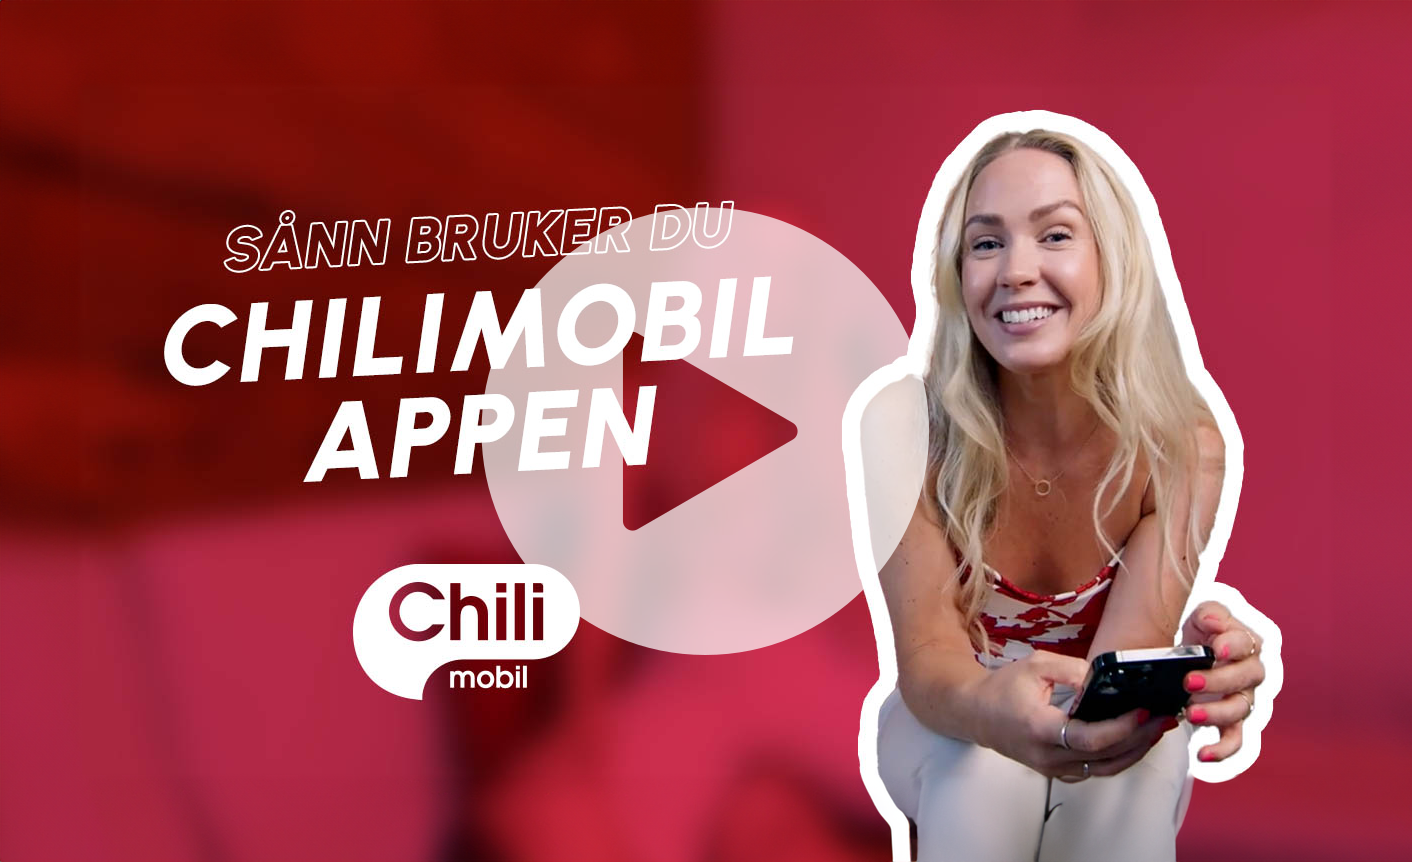 Kvinner sitter og holder en mobiltelefon i mens hun smiler til kamera, teskten sånn bruker du chilimobil-appen vises i stort skrift